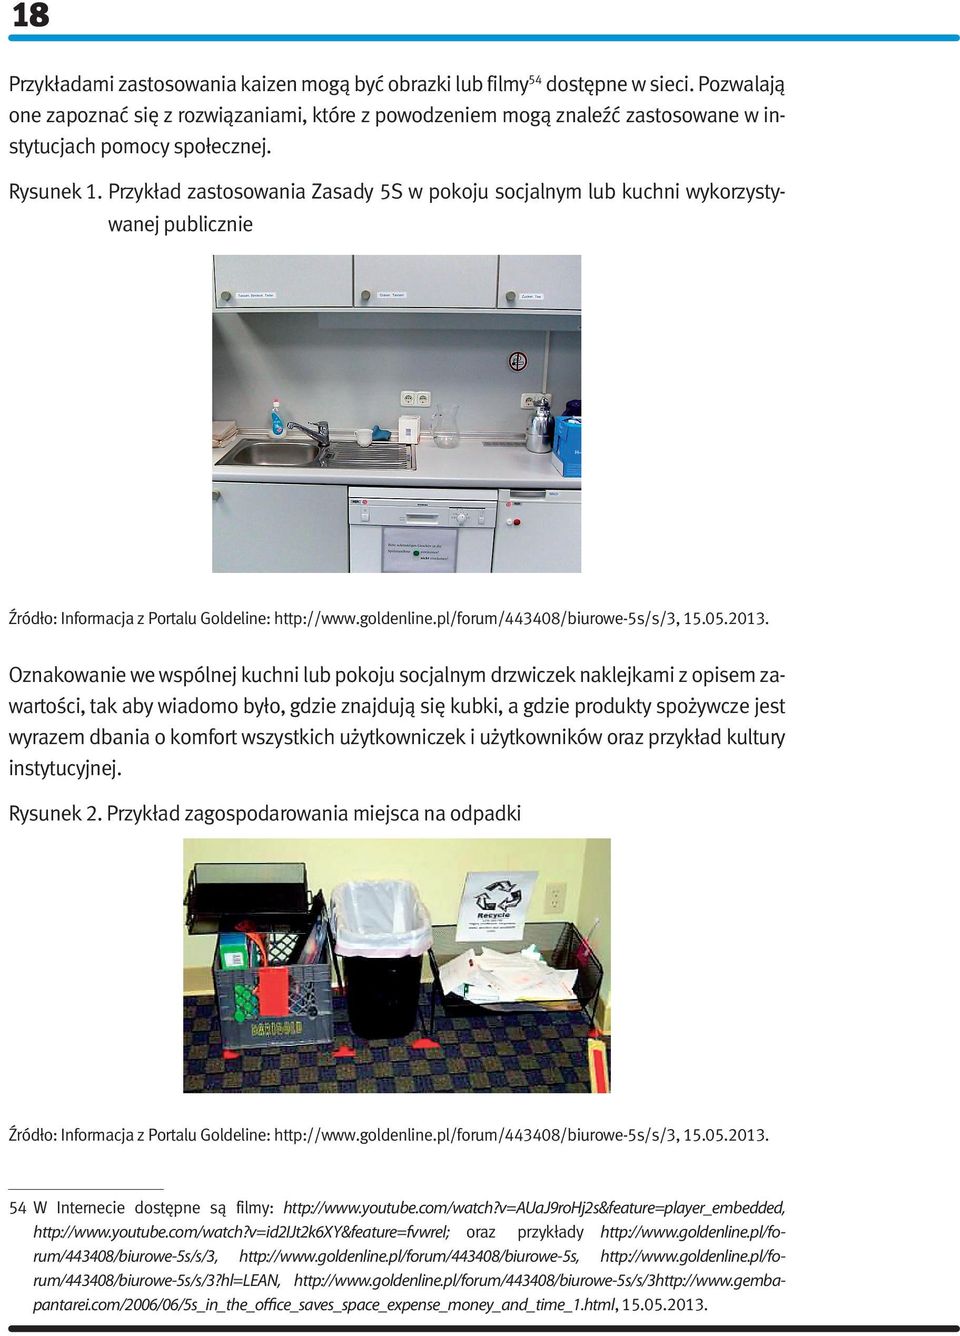 Przykład zastosowania Zasady 5S w pokoju socjalnym lub kuchni wykorzystywanej publicznie Źródło: Informacja z Portalu Goldeline: http://www.goldenline.pl/forum/443408/biurowe-5s/s/3, 15.05.2013.